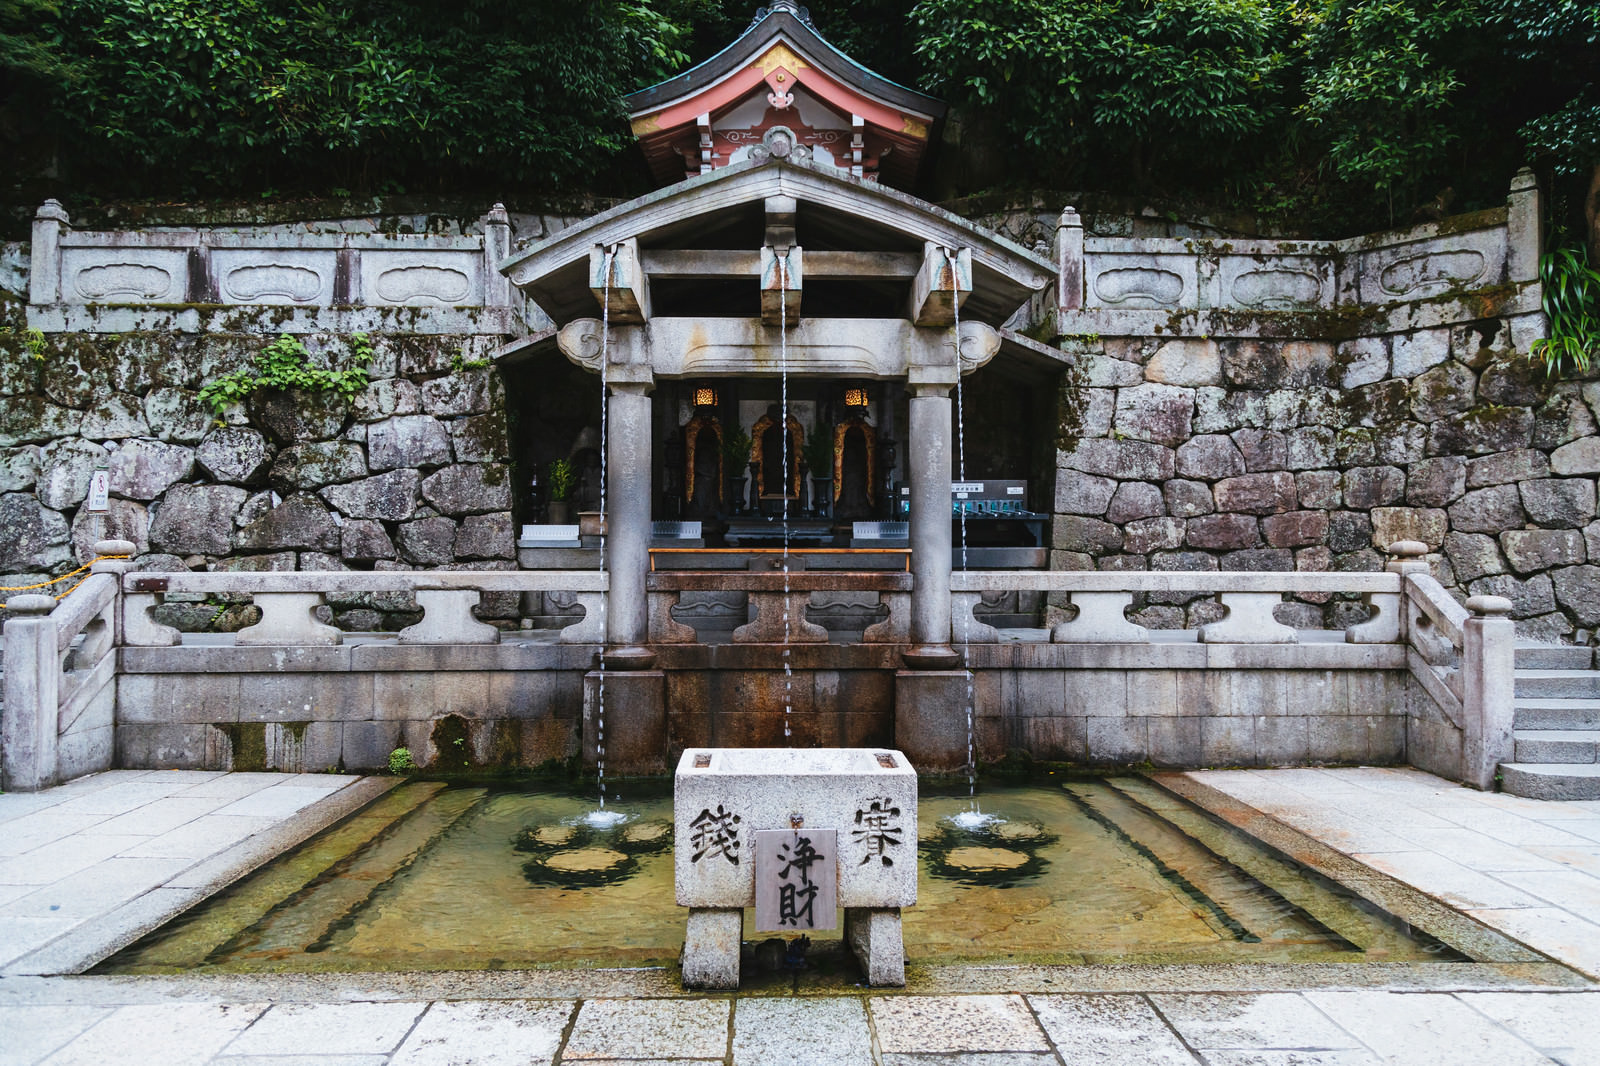 京都 清水寺の 音羽の滝 の写真を無料ダウンロード フリー素材 ぱくたそ